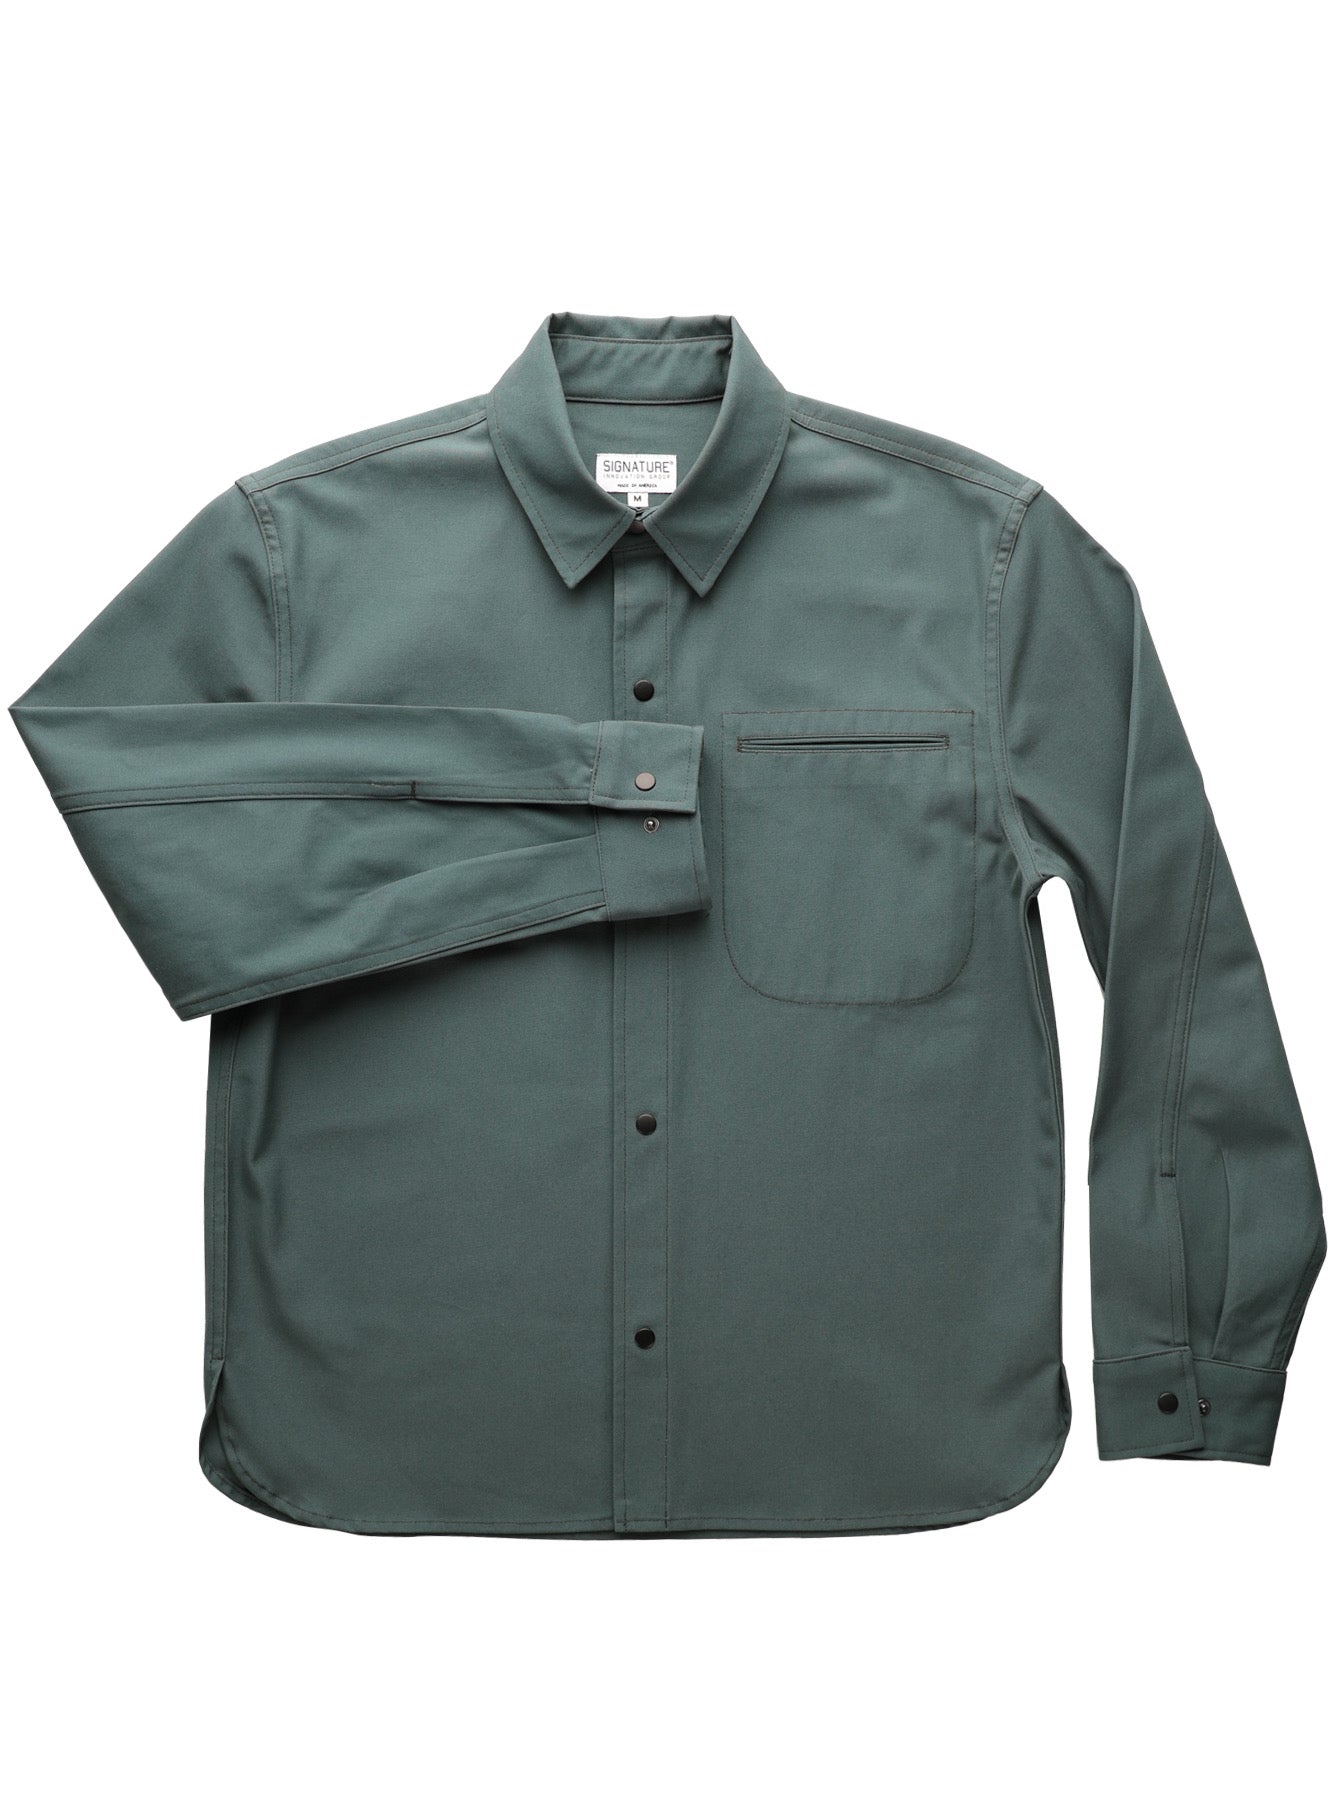 Ranger Shirt Jacket Emerald